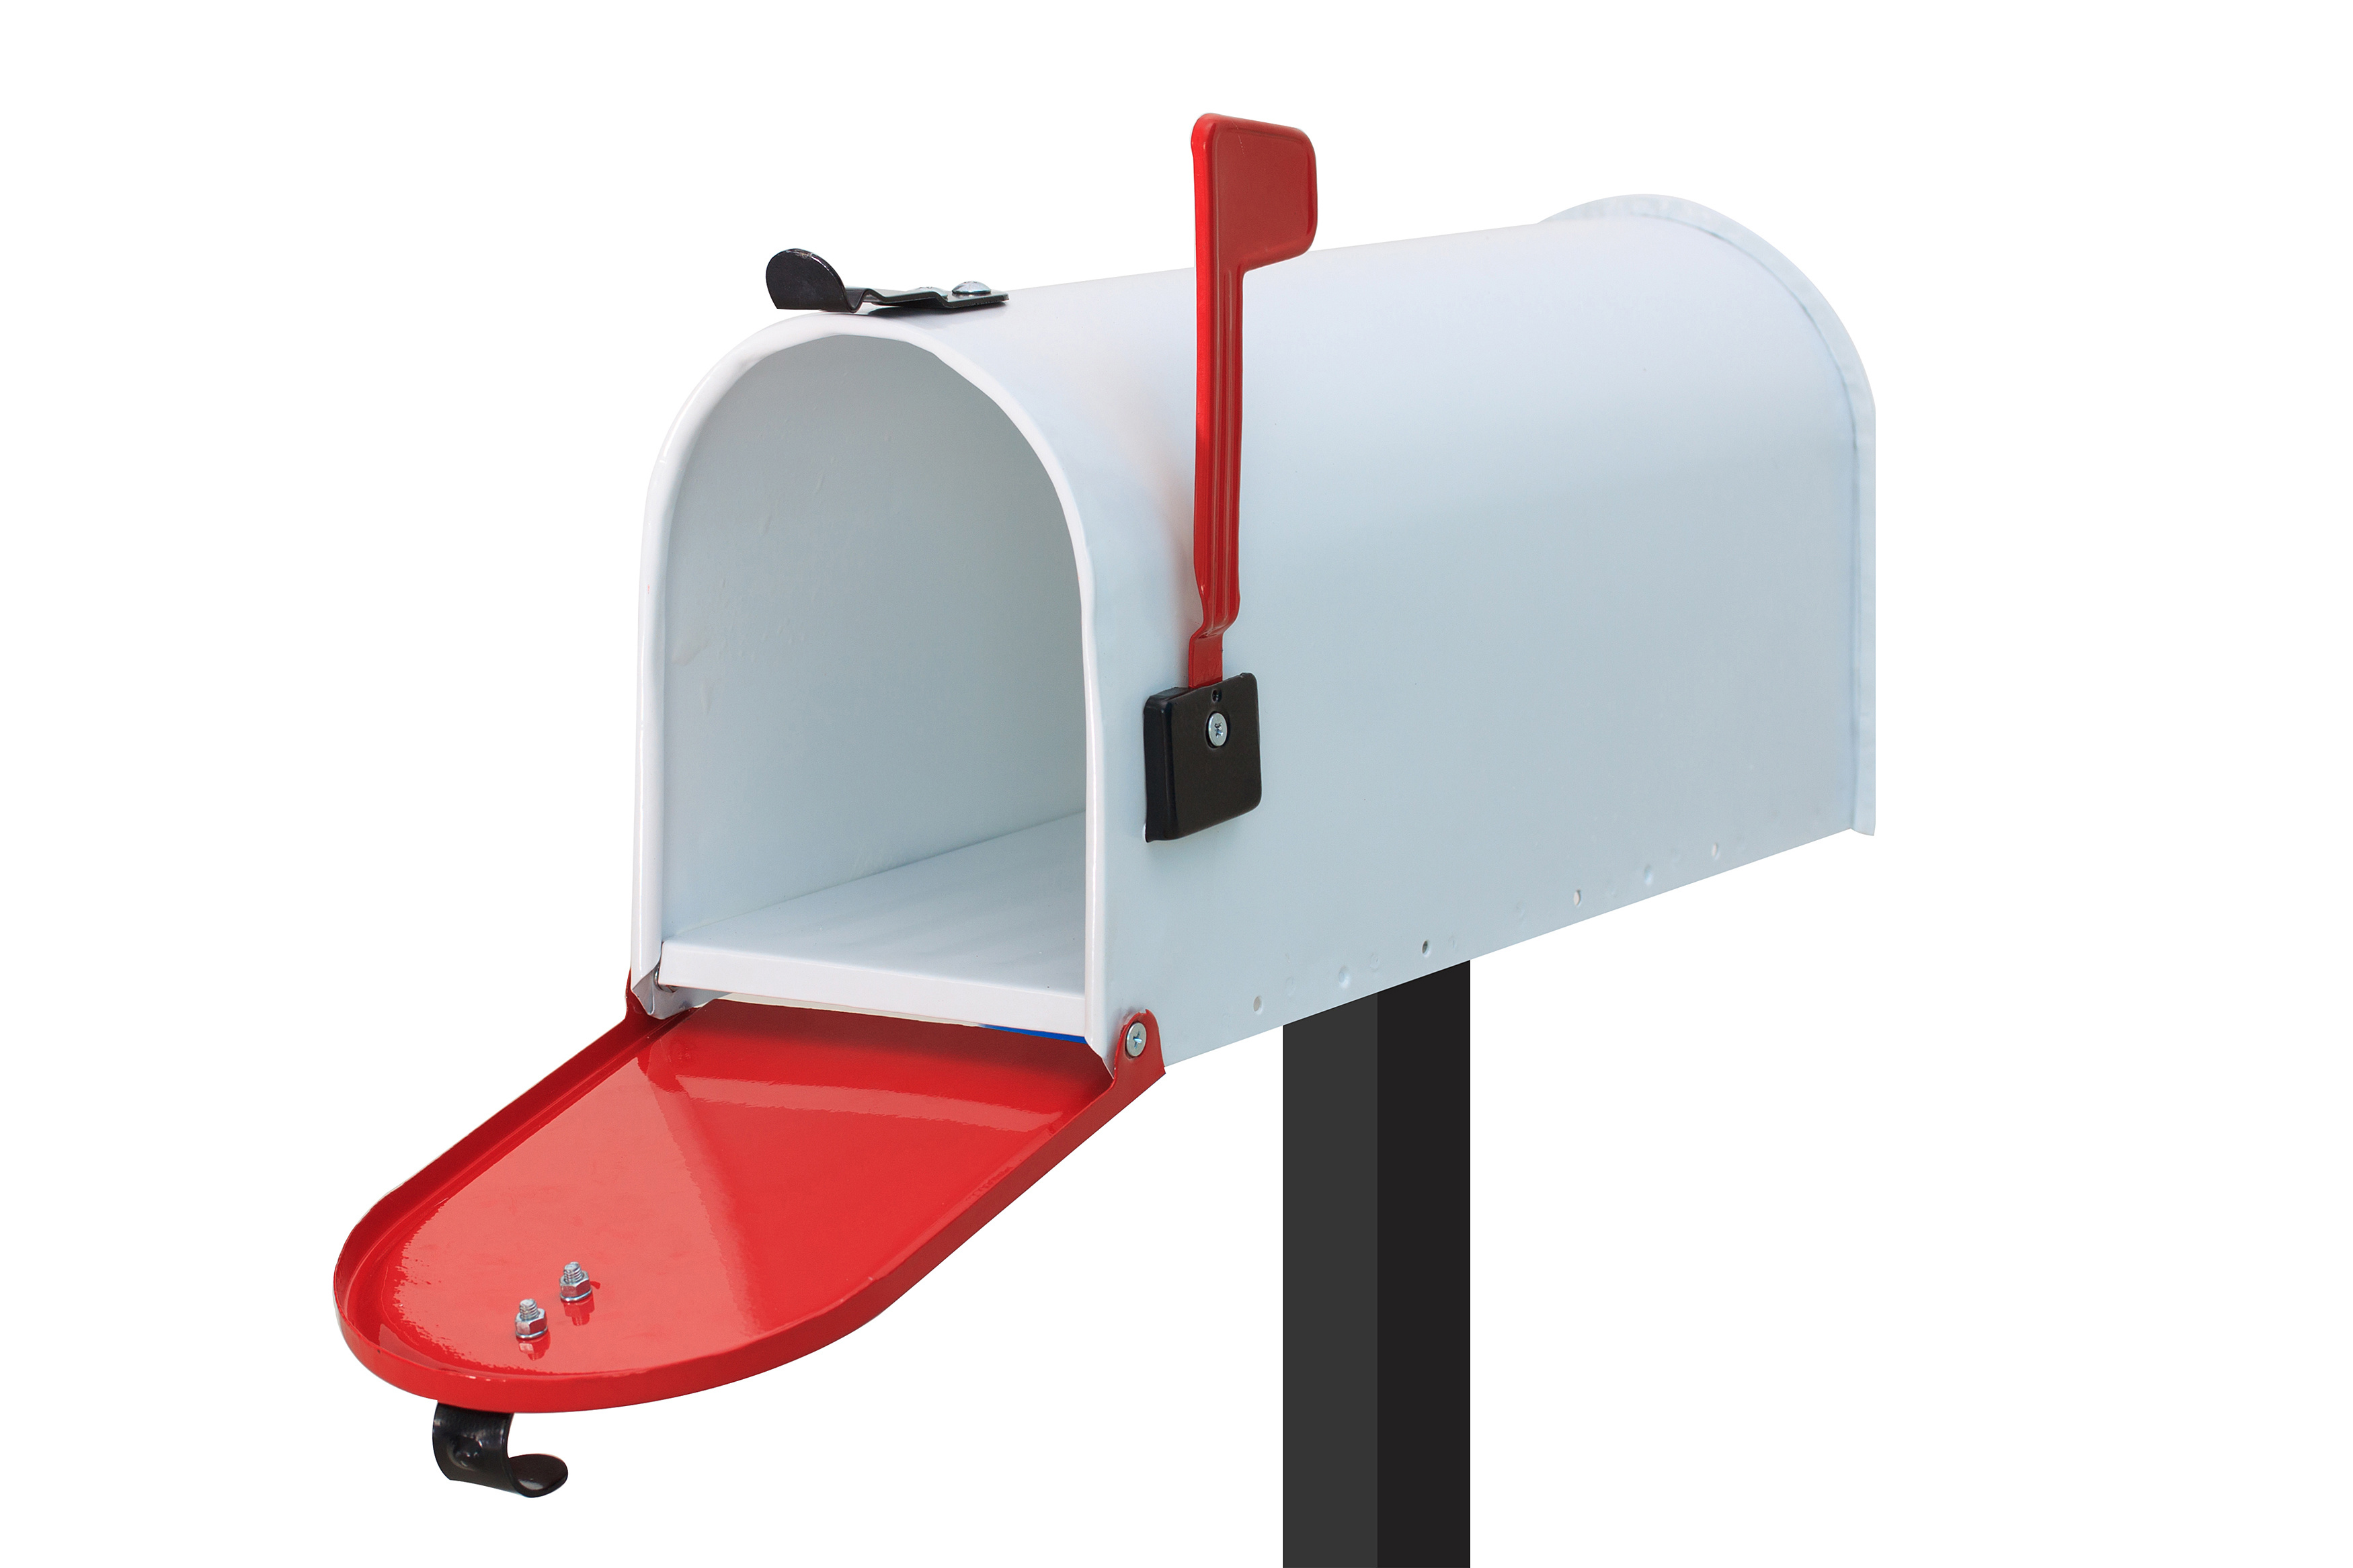 White mailbox